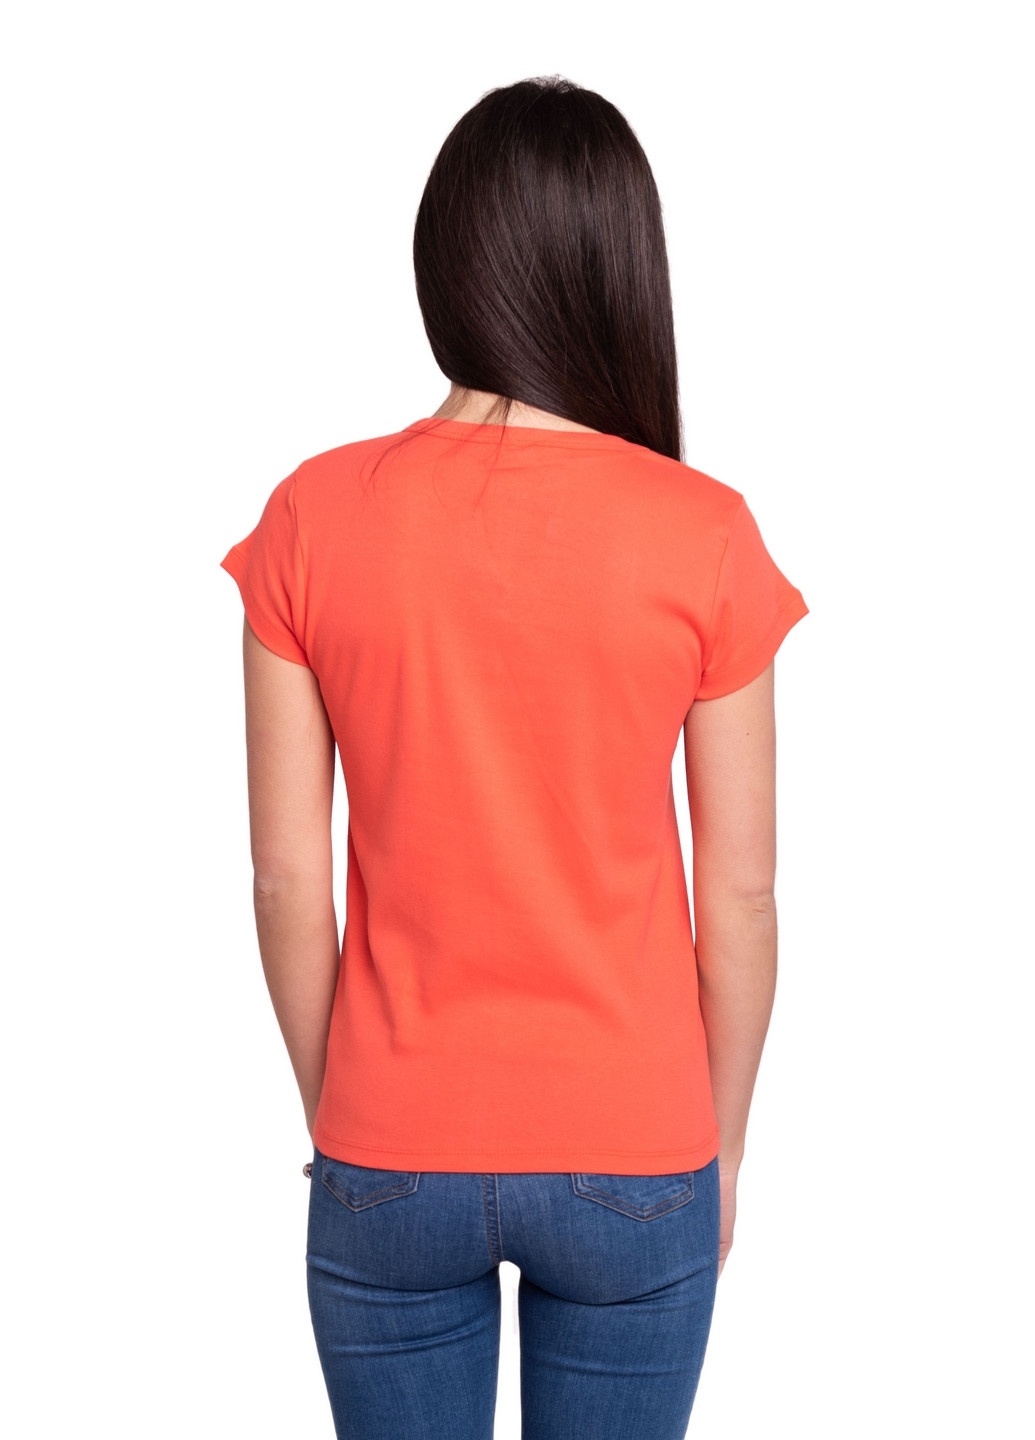 Коралловая всесезон футболка женская Наталюкс 21-2383